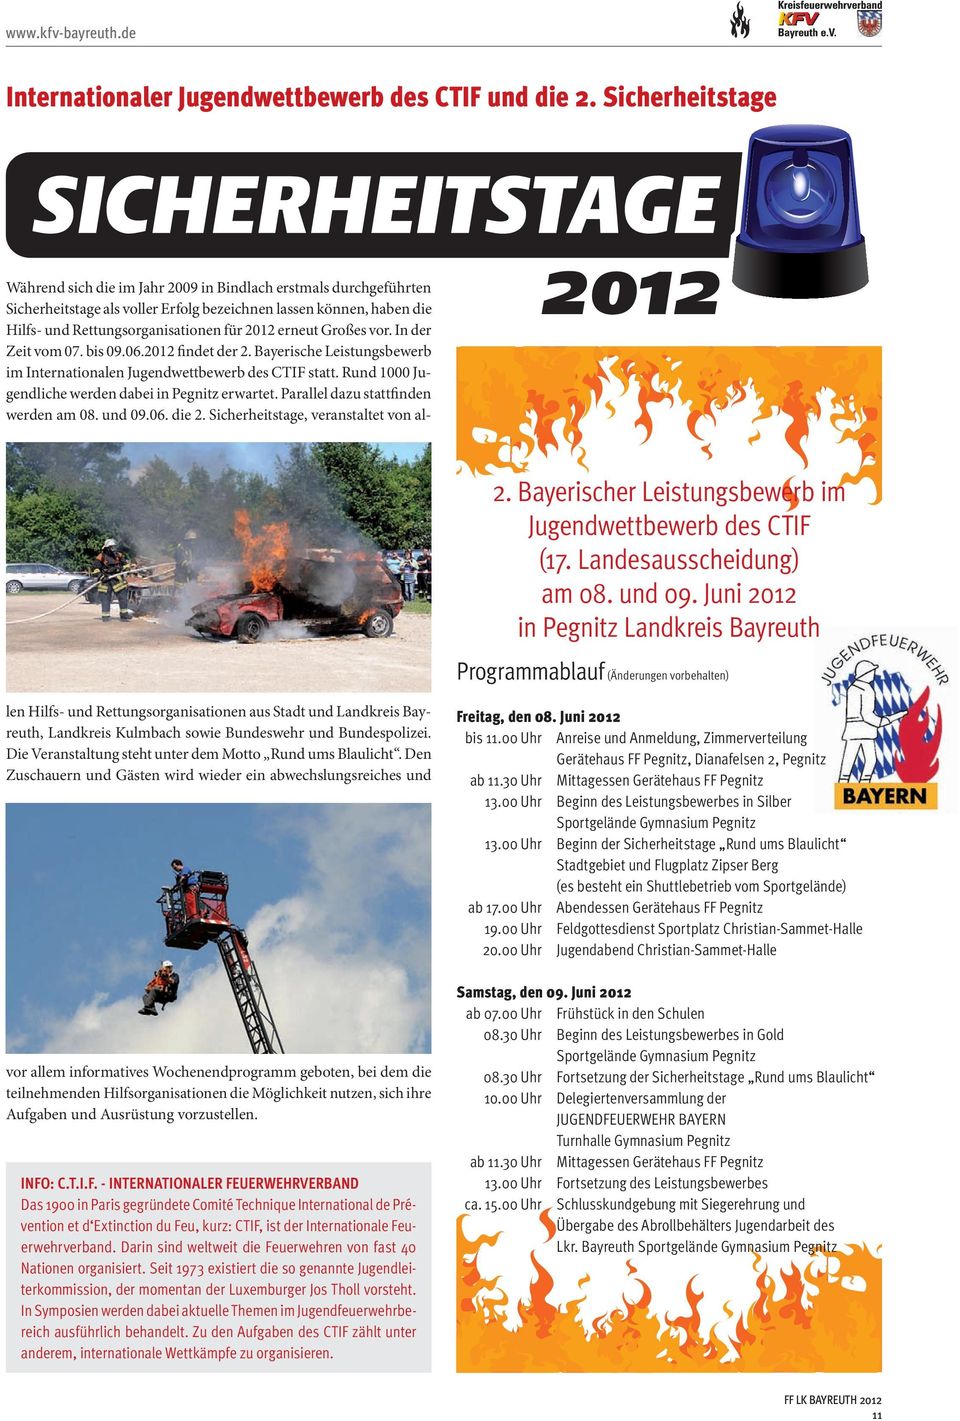 erneut Großes vor. In der Zeit vom 07. bis 09.06.2012 findet der 2. Bayerische Leistungsbewerb im Internationalen Jugendwettbewerb des CTIF statt.